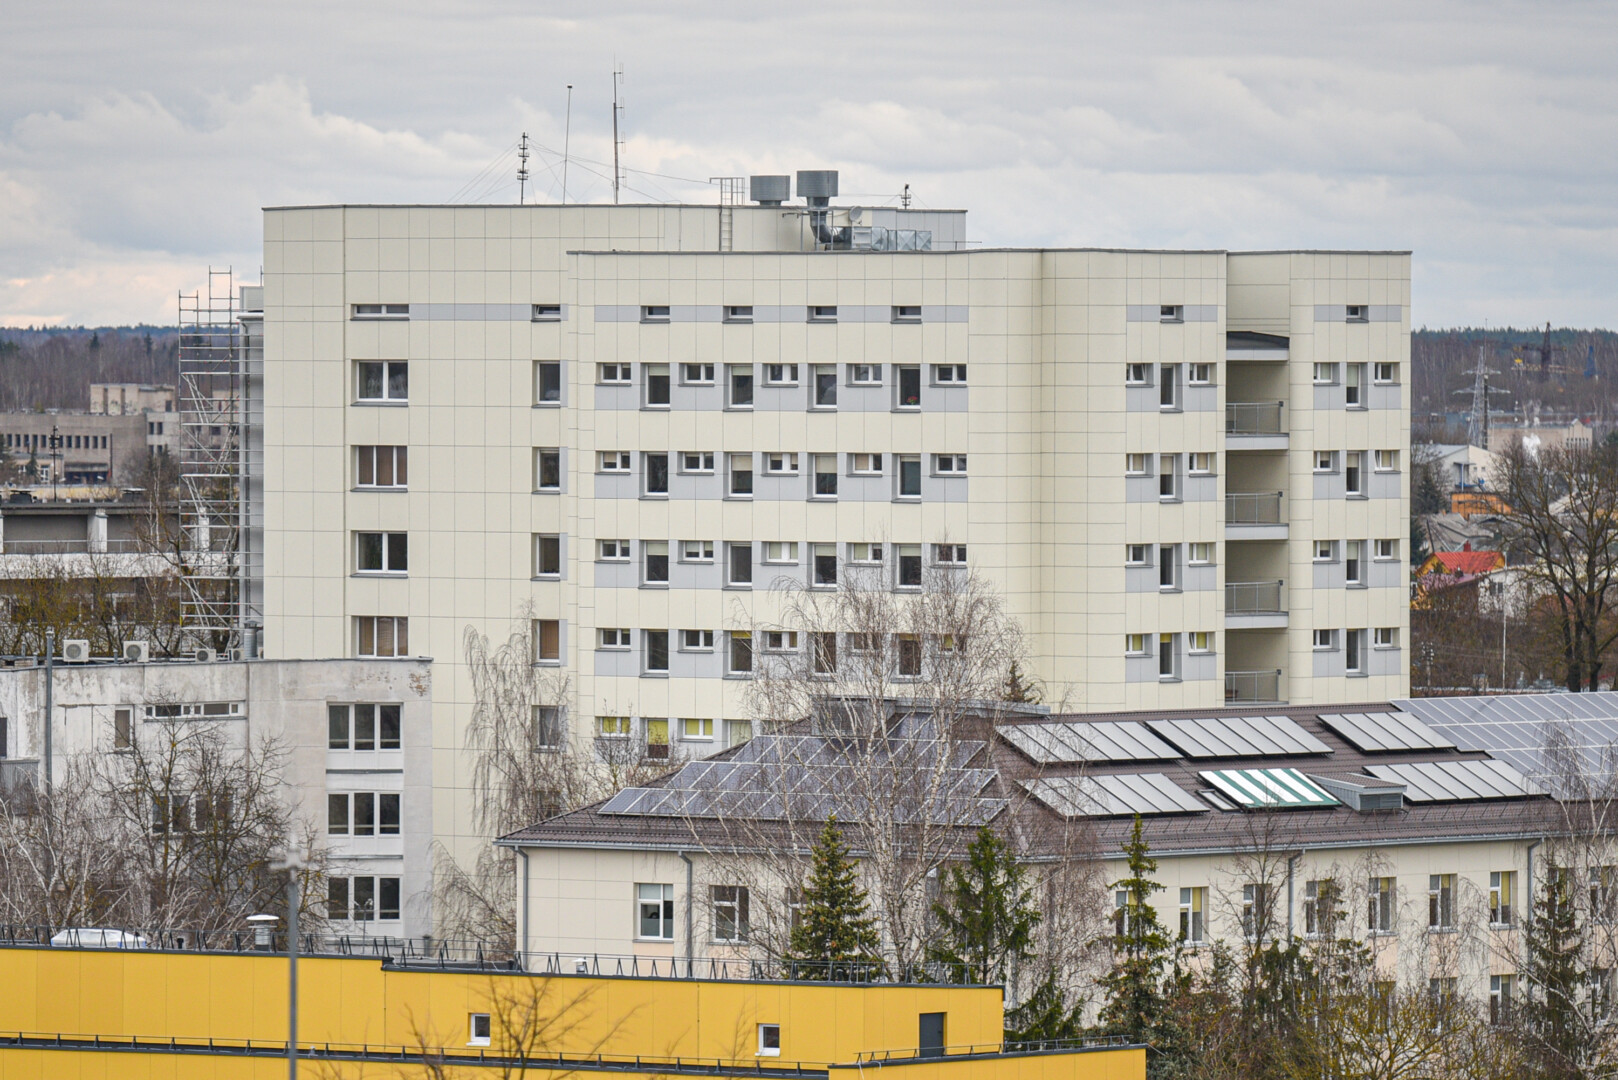 Respublikinė Panevėžio ligoninė saugo užšaldytus negimusių kūdikių palaikus. P. ŽIDONIO nuotr.